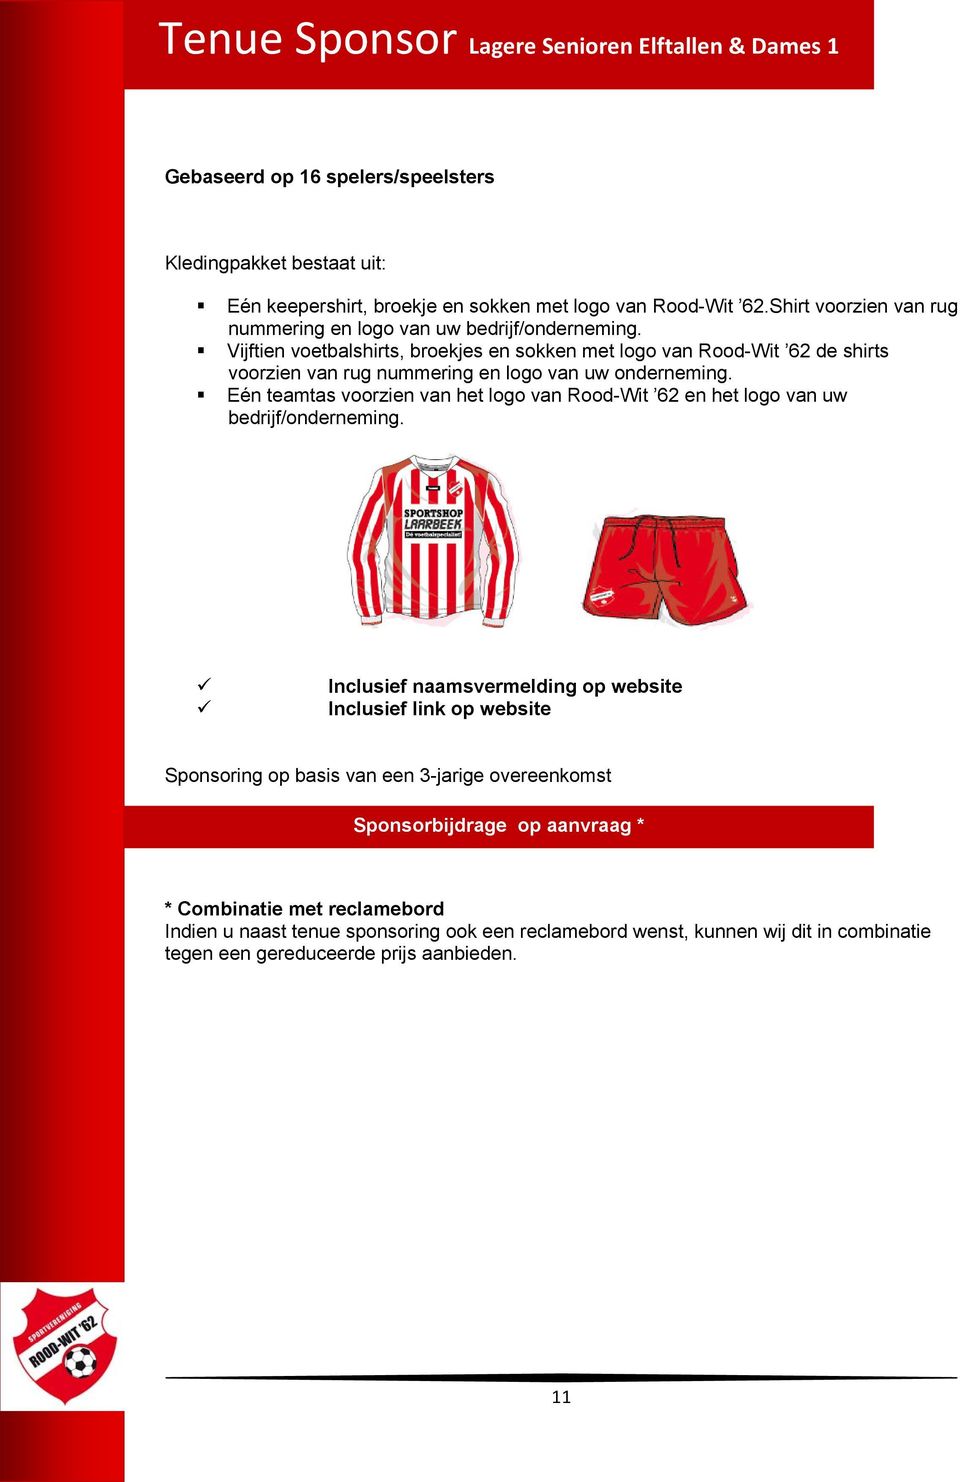 Vijftien voetbalshirts, broekjes en sokken met logo van Rood-Wit 62 de shirts voorzien van rug nummering en logo van uw onderneming.